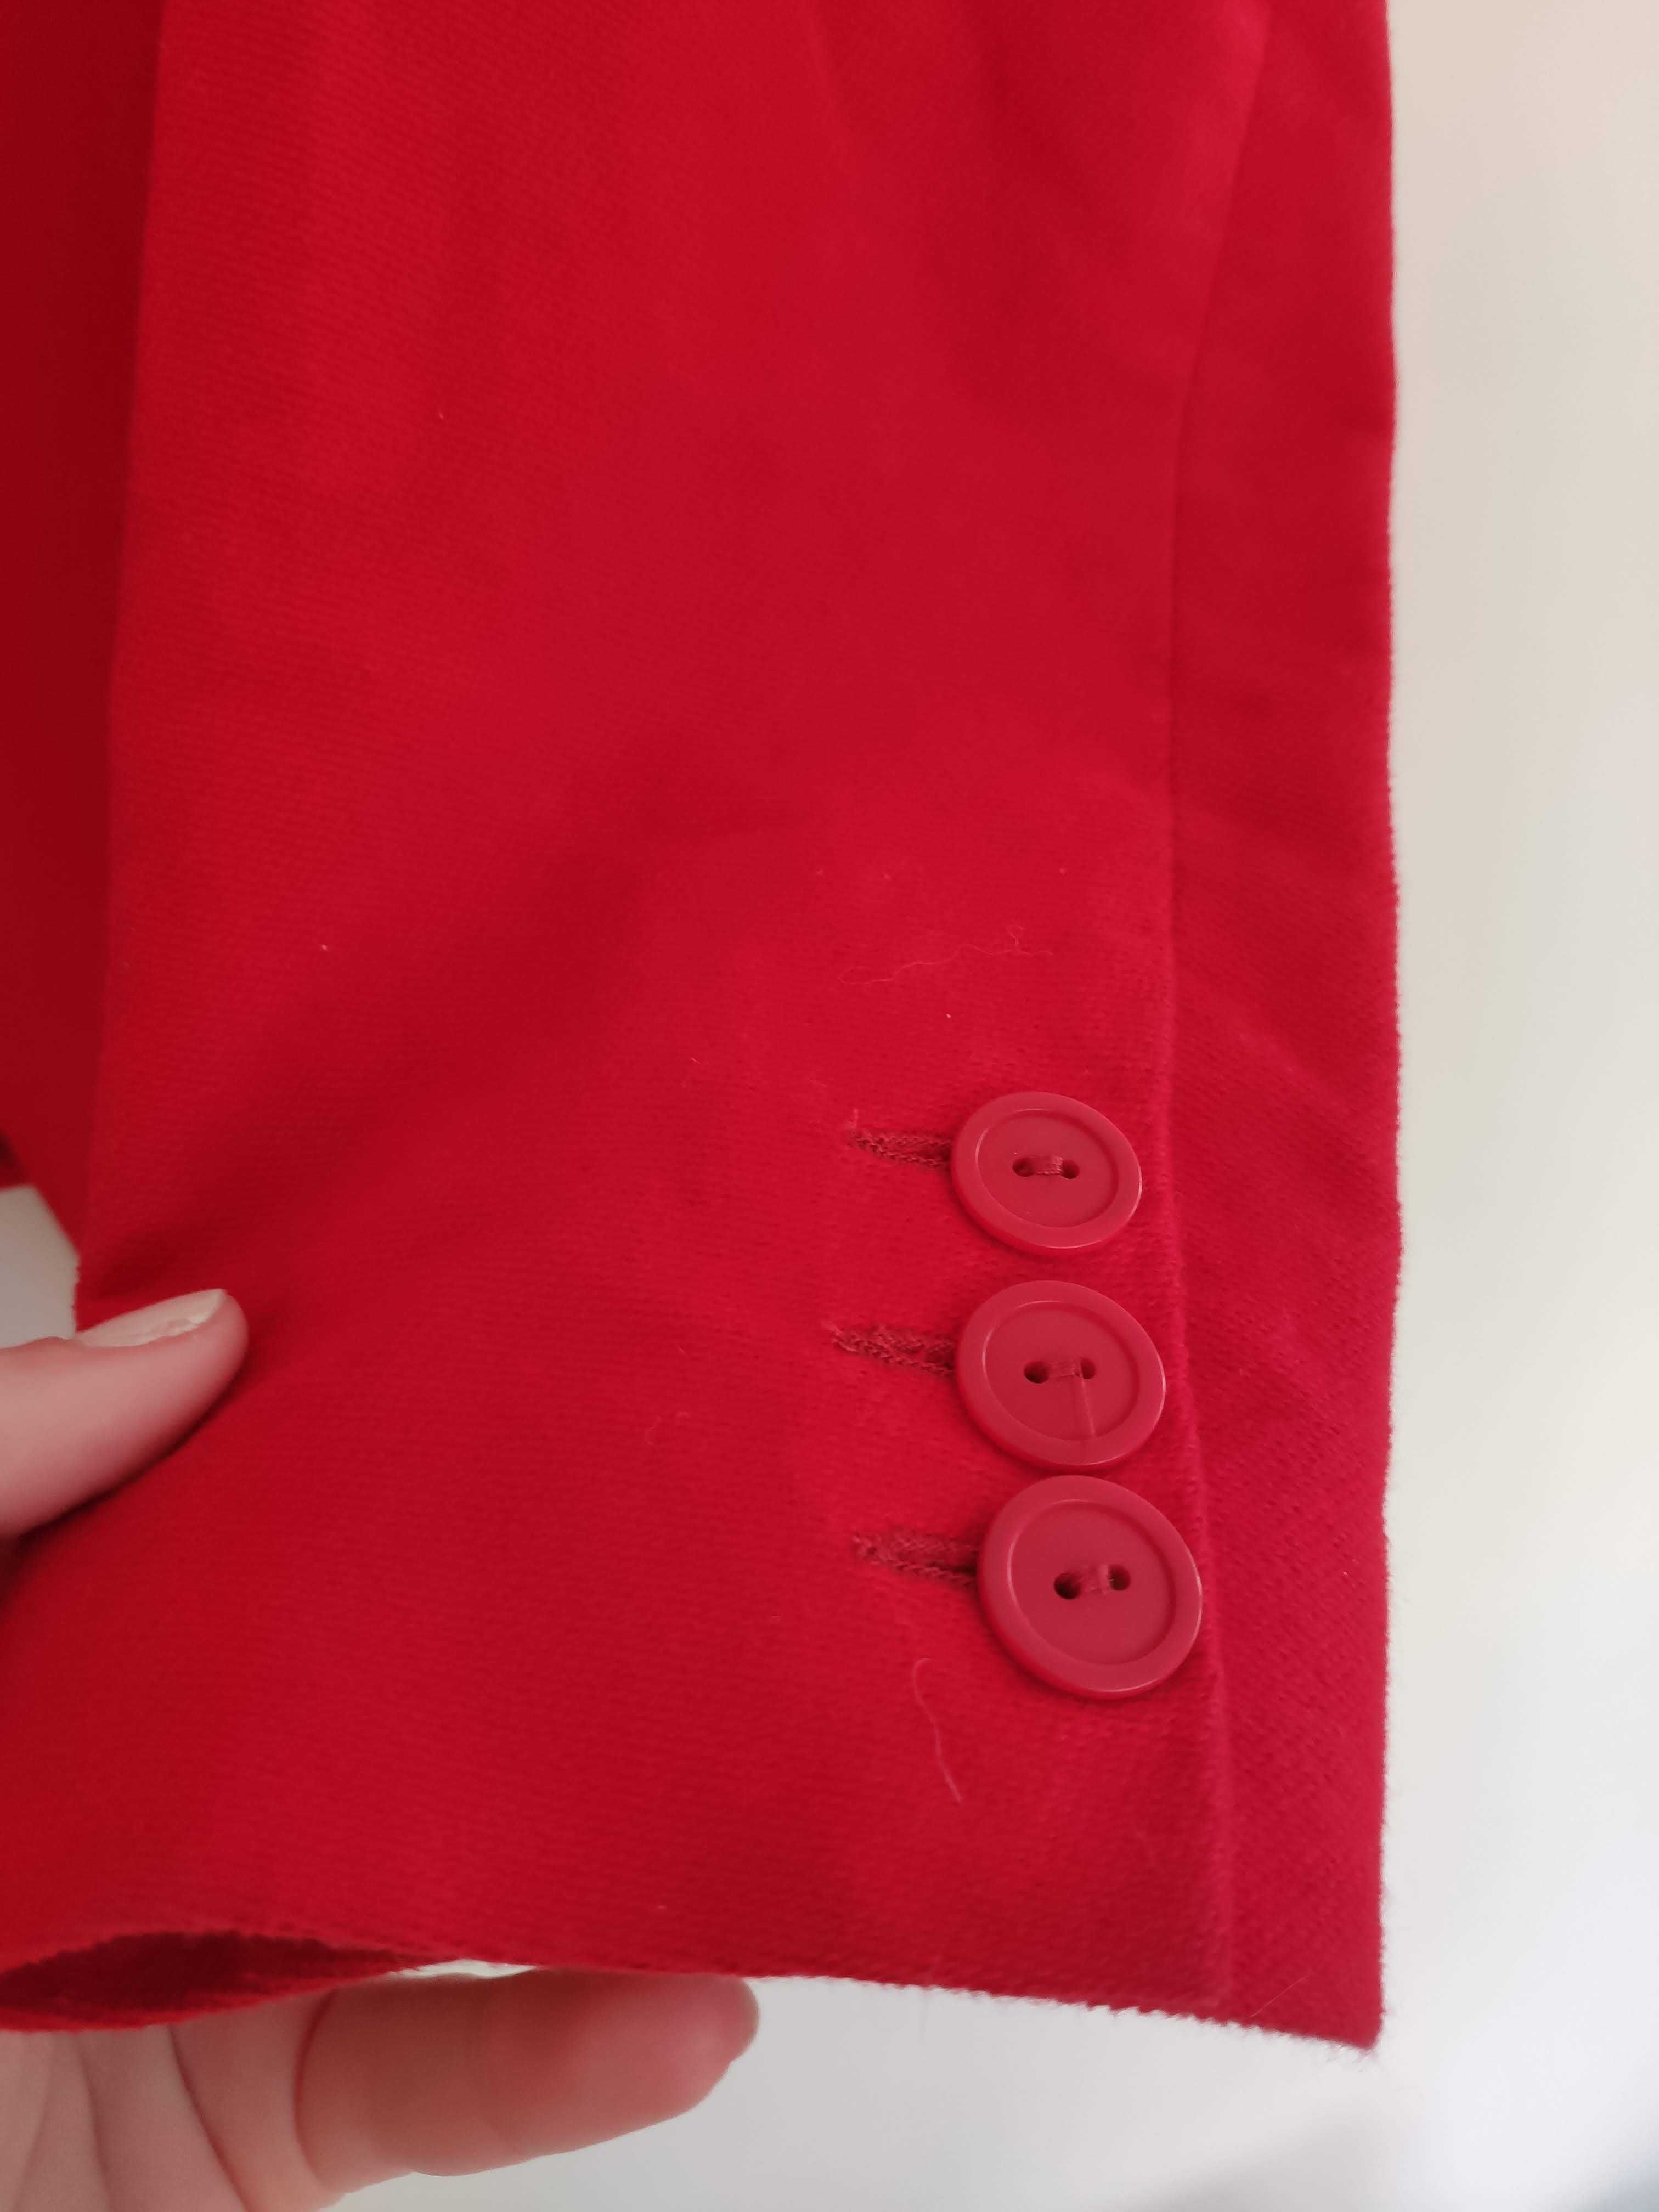 Дамско сако Sandro червено розово бяло черно размер 50 52